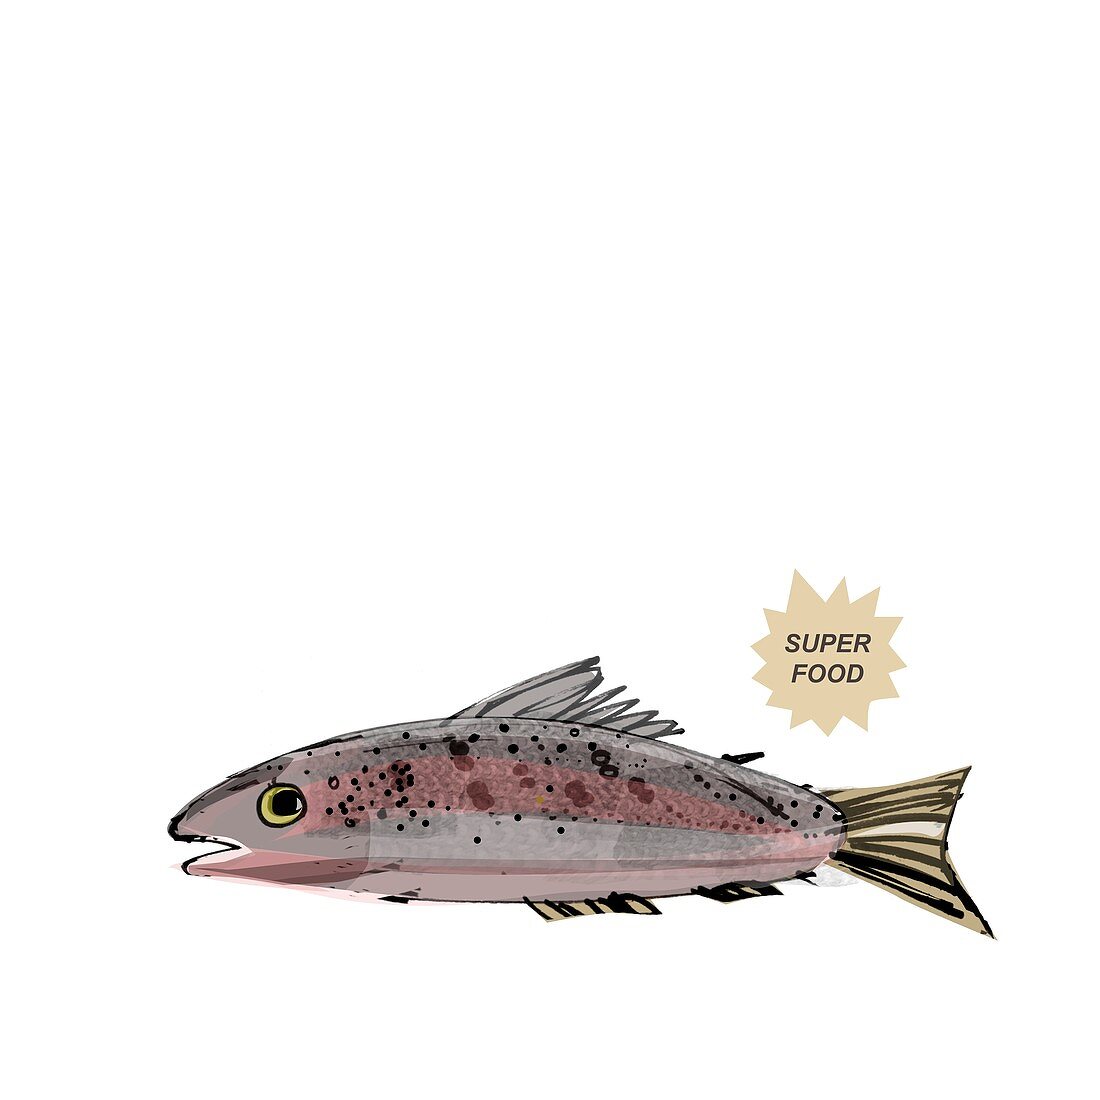 Salmon superfood,artwork